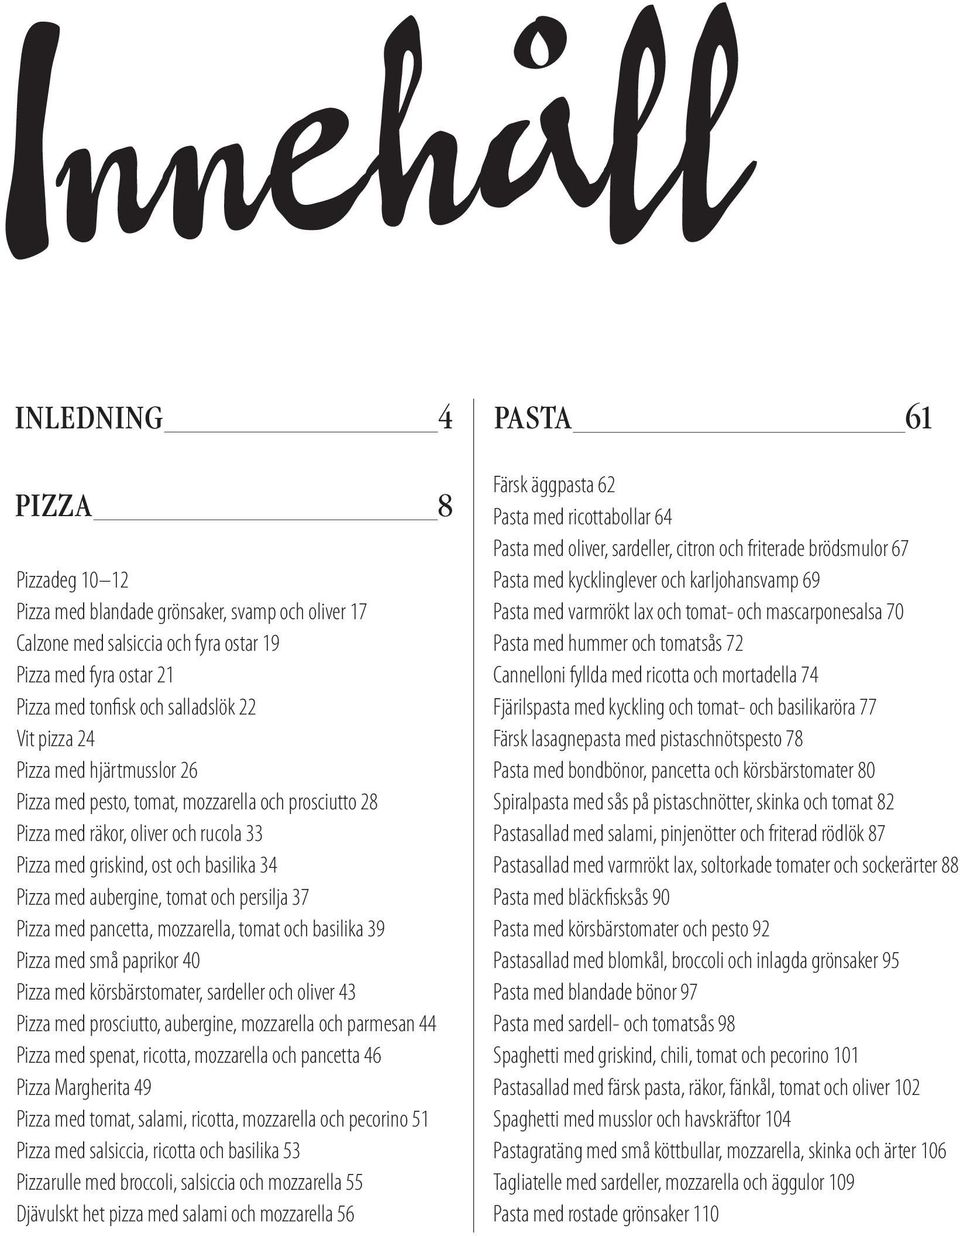 persilja 37 Pizza med pancetta, mozzarella, tomat och basilika 39 Pizza med små paprikor 40 Pizza med körsbärstomater, sardeller och oliver 43 Pizza med prosciutto, aubergine, mozzarella och parmesan